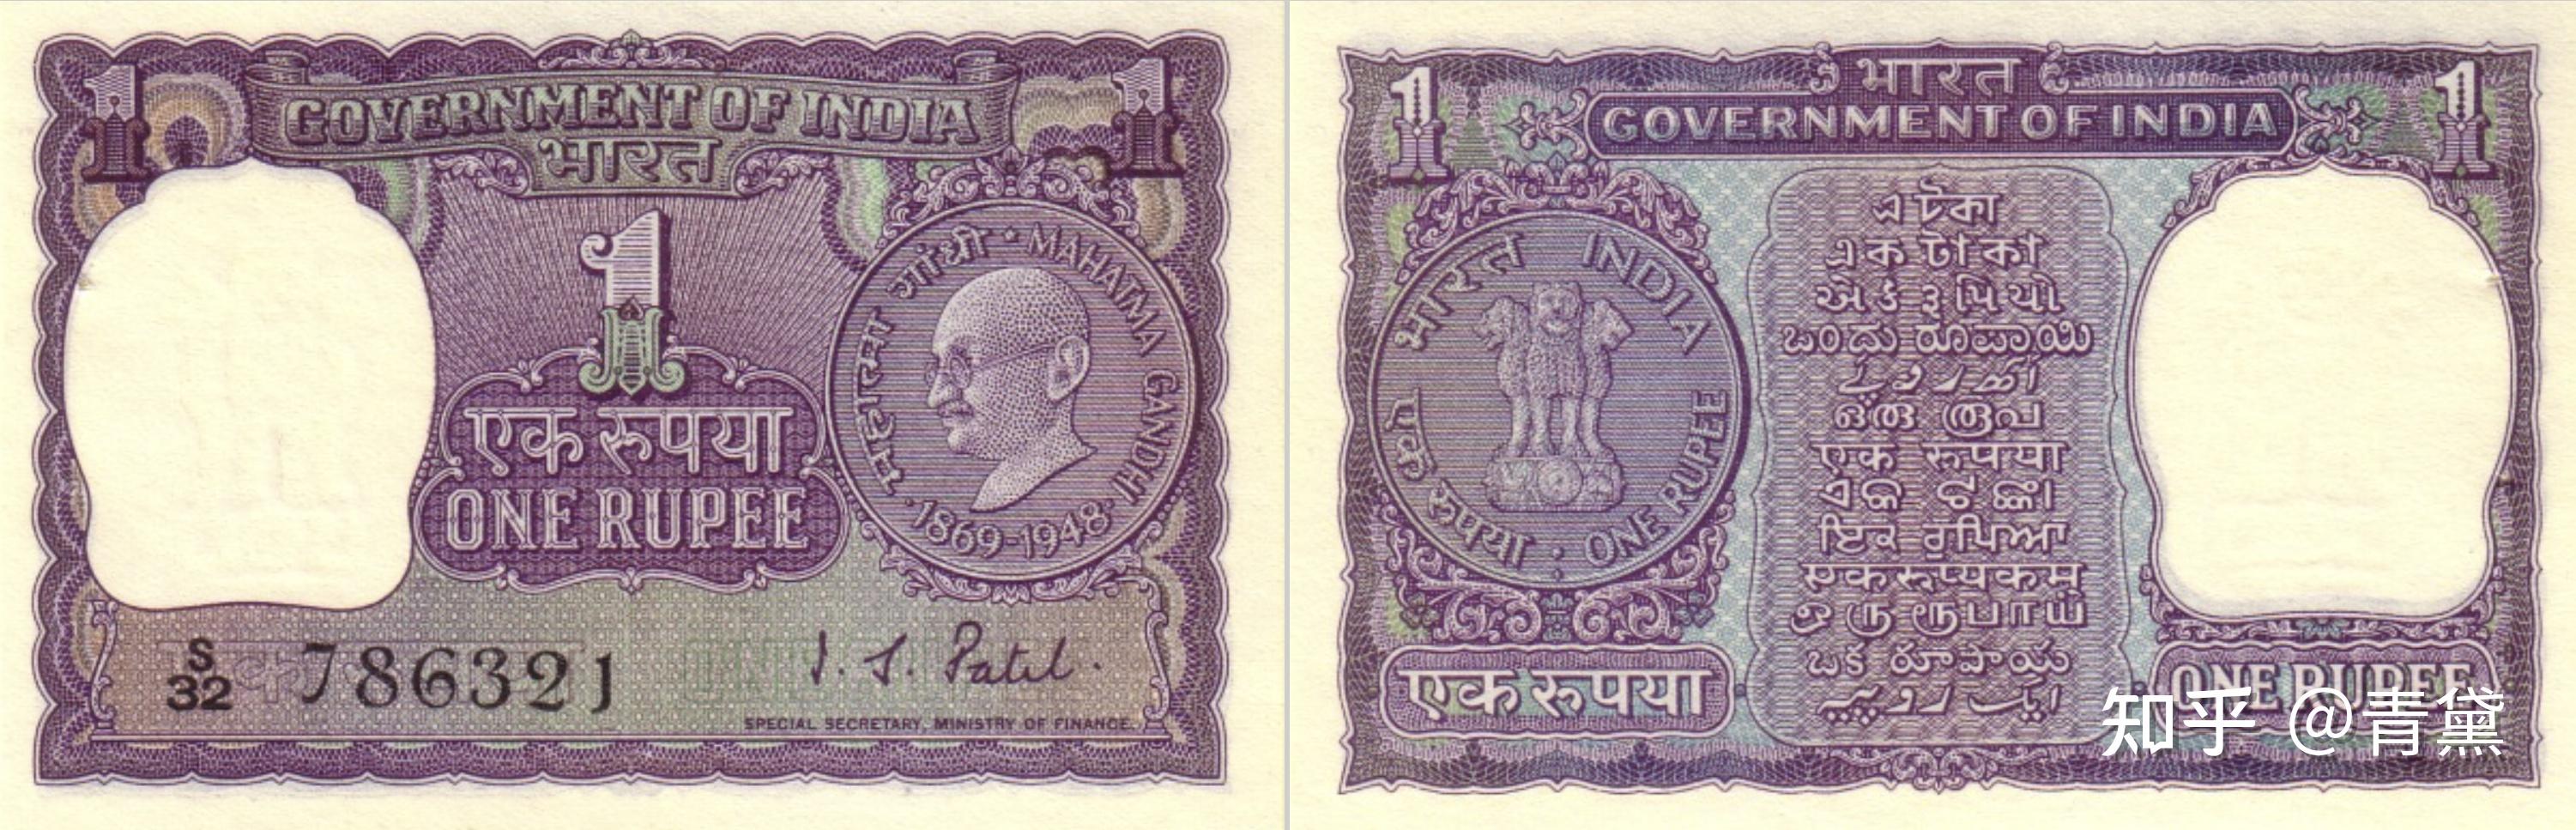 印度货币. 印度卢比纸币1000印度卢比 库存照片. 图片 包括有 全球, 商业, 储蓄, 恒河, 北印度语 - 222058012